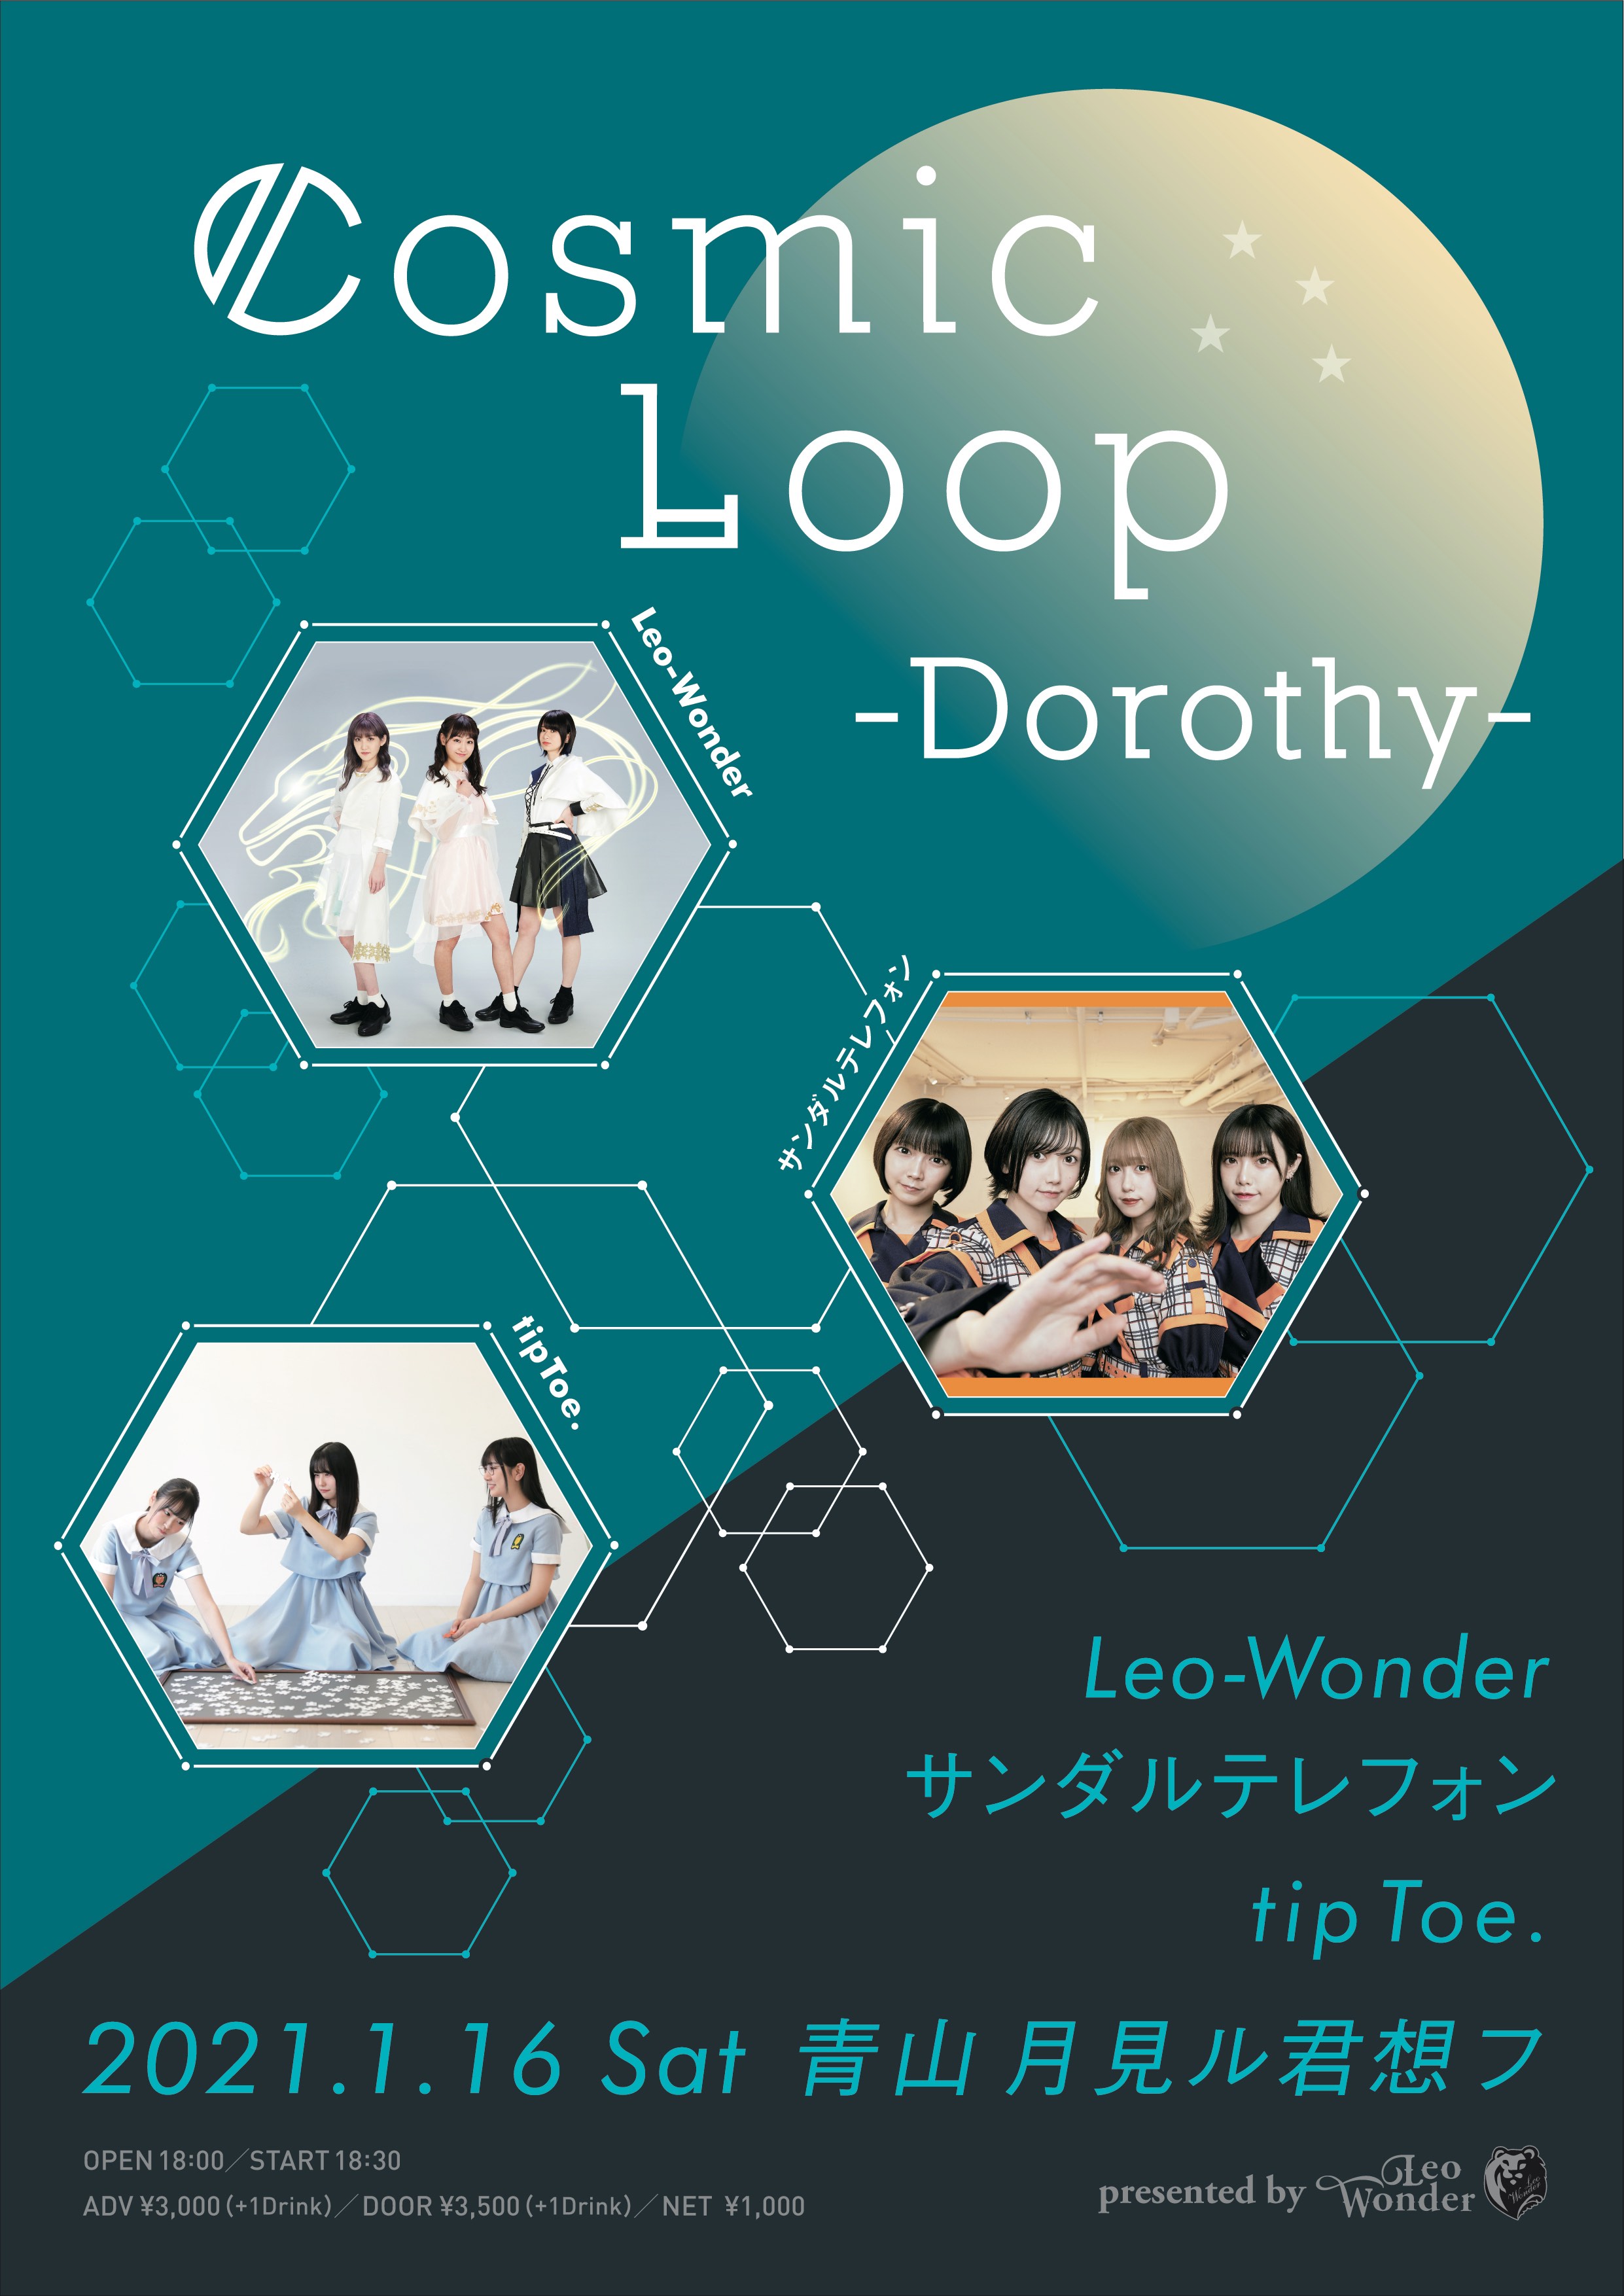 Leo-Wonder Presents “Cosmic Loop”-Dorothy-